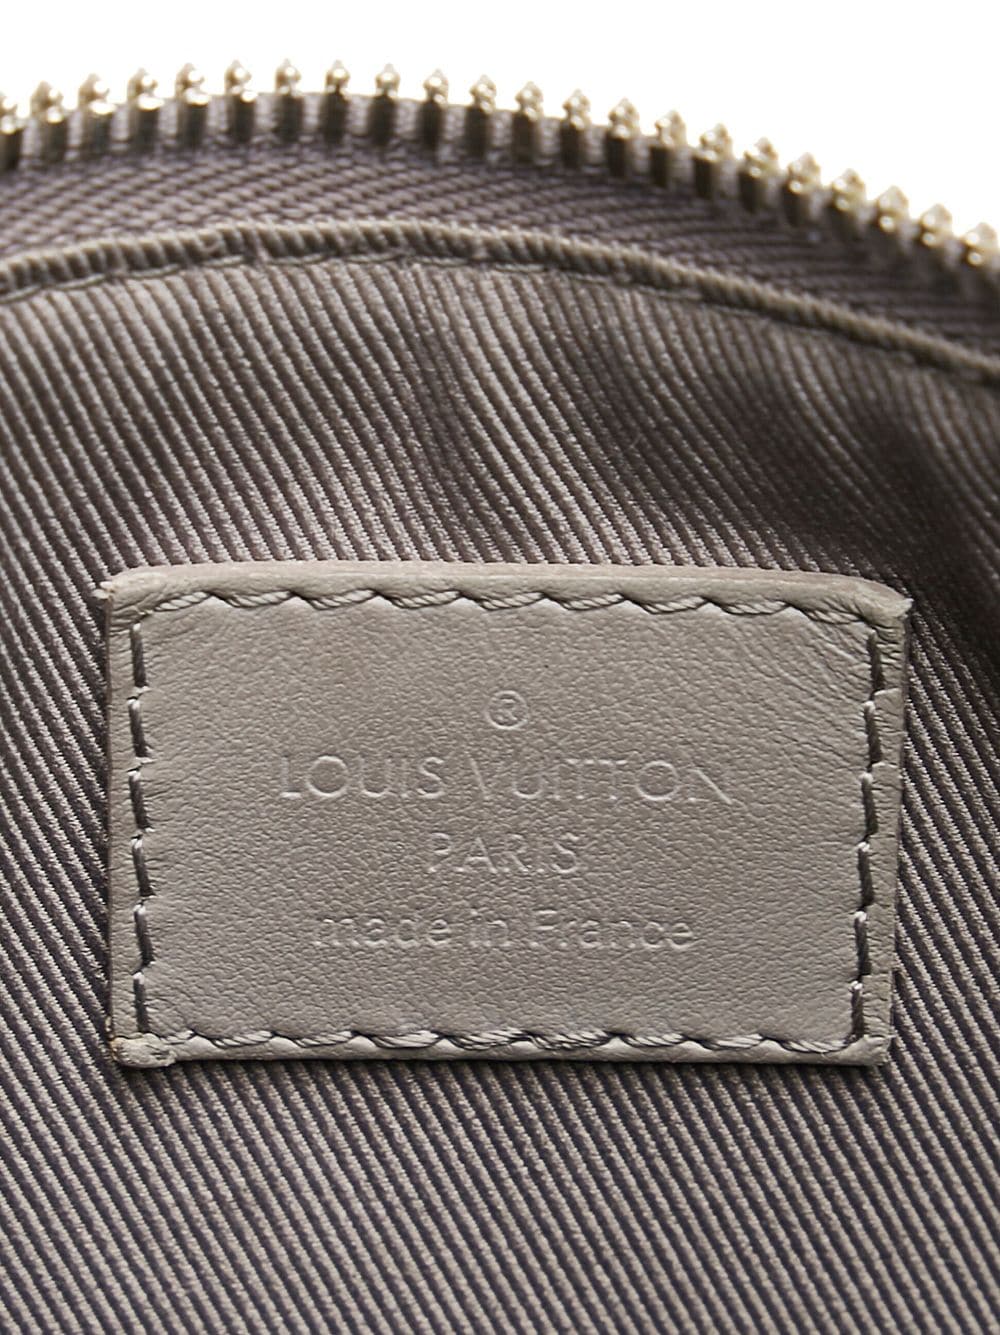 Authentic LOUIS VUITTON LV Aerogramme City Keepall M59255 Shoulder bag  #260